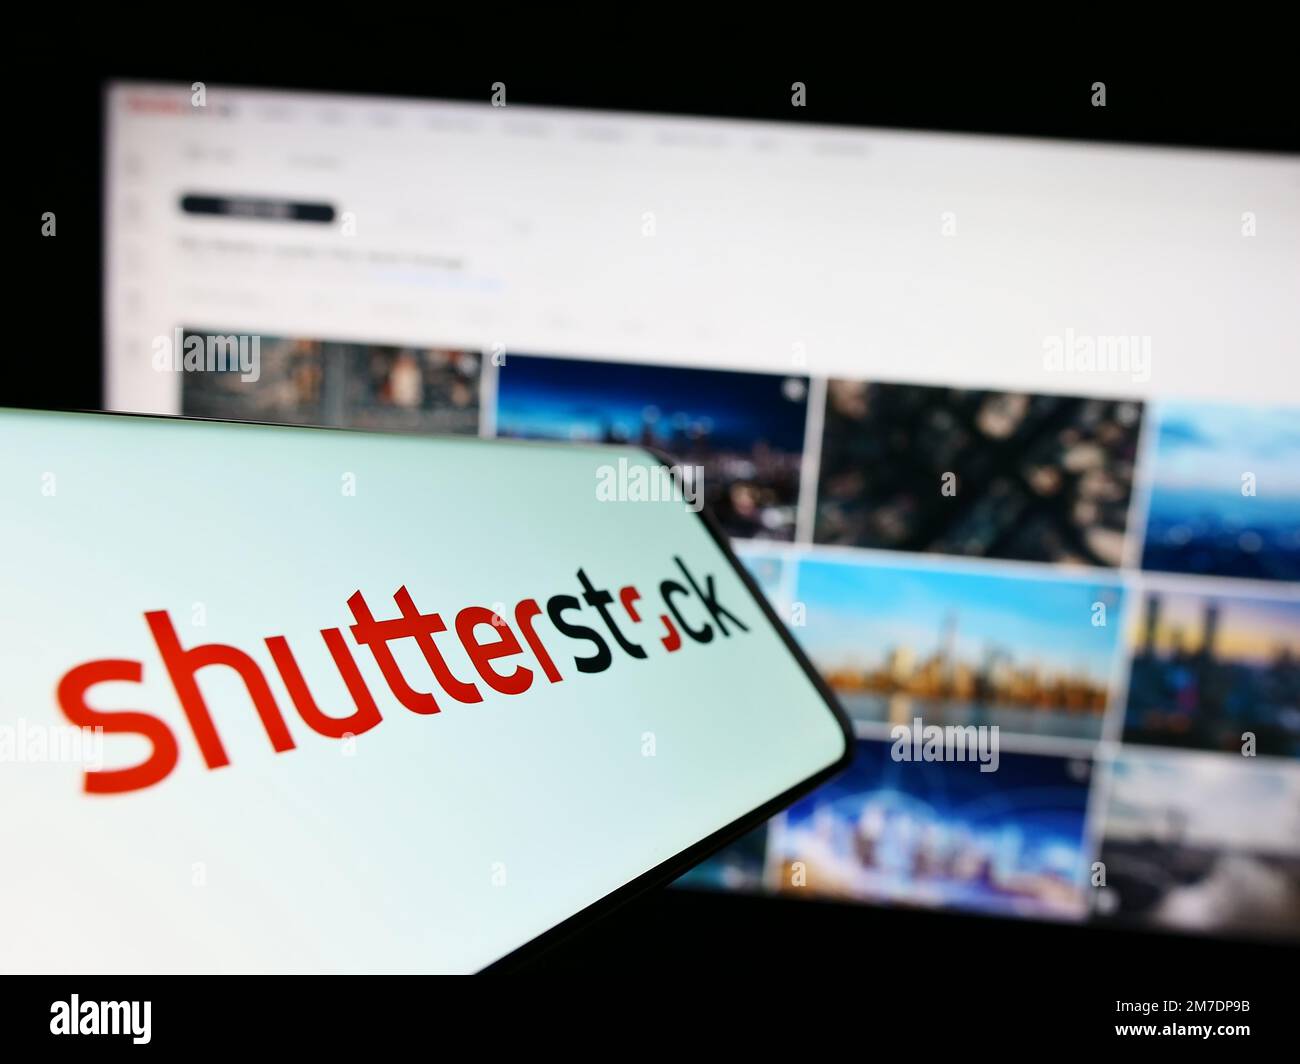 Telefono cellulare con il logo della società di fotografia Stock US Shutterstock Inc. Sullo schermo di fronte al sito web. Messa a fuoco al centro a destra del display del telefono. Foto Stock